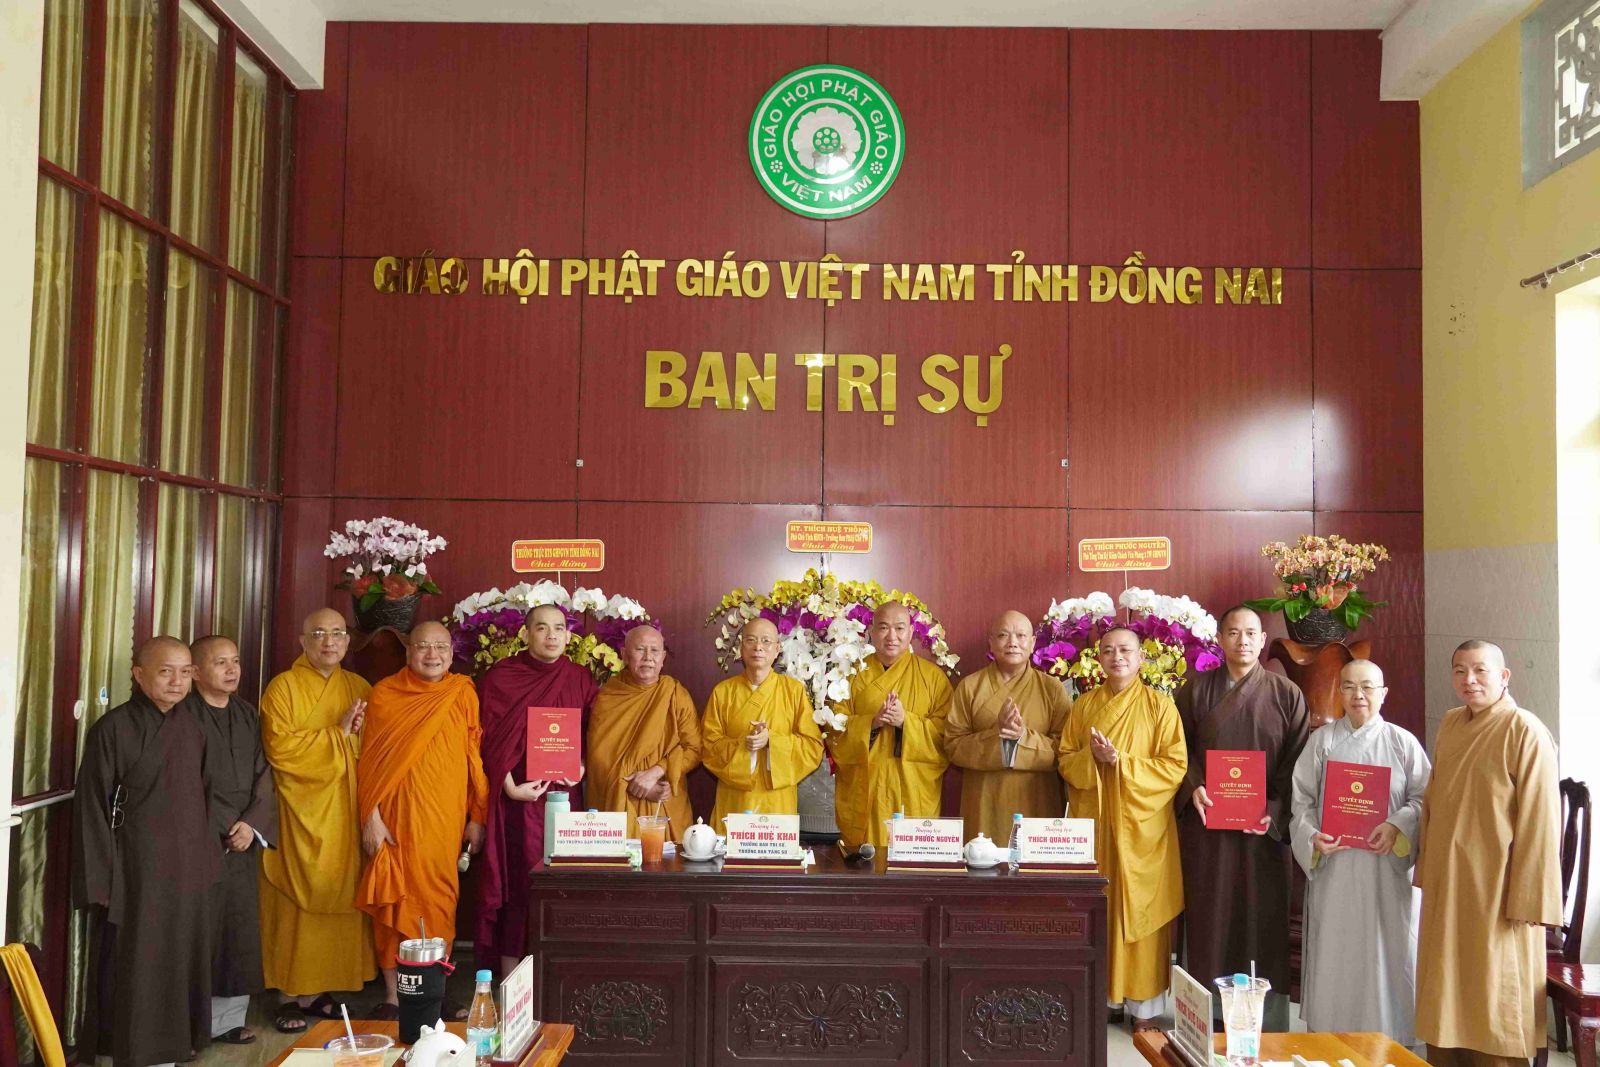 Đồng Nai: Hội đồng Trị sự trao quyết định chuẩn y nhân sự bổ sung cho thành viên Ban Trị sự Phật giáo tỉnh Đồng Nai